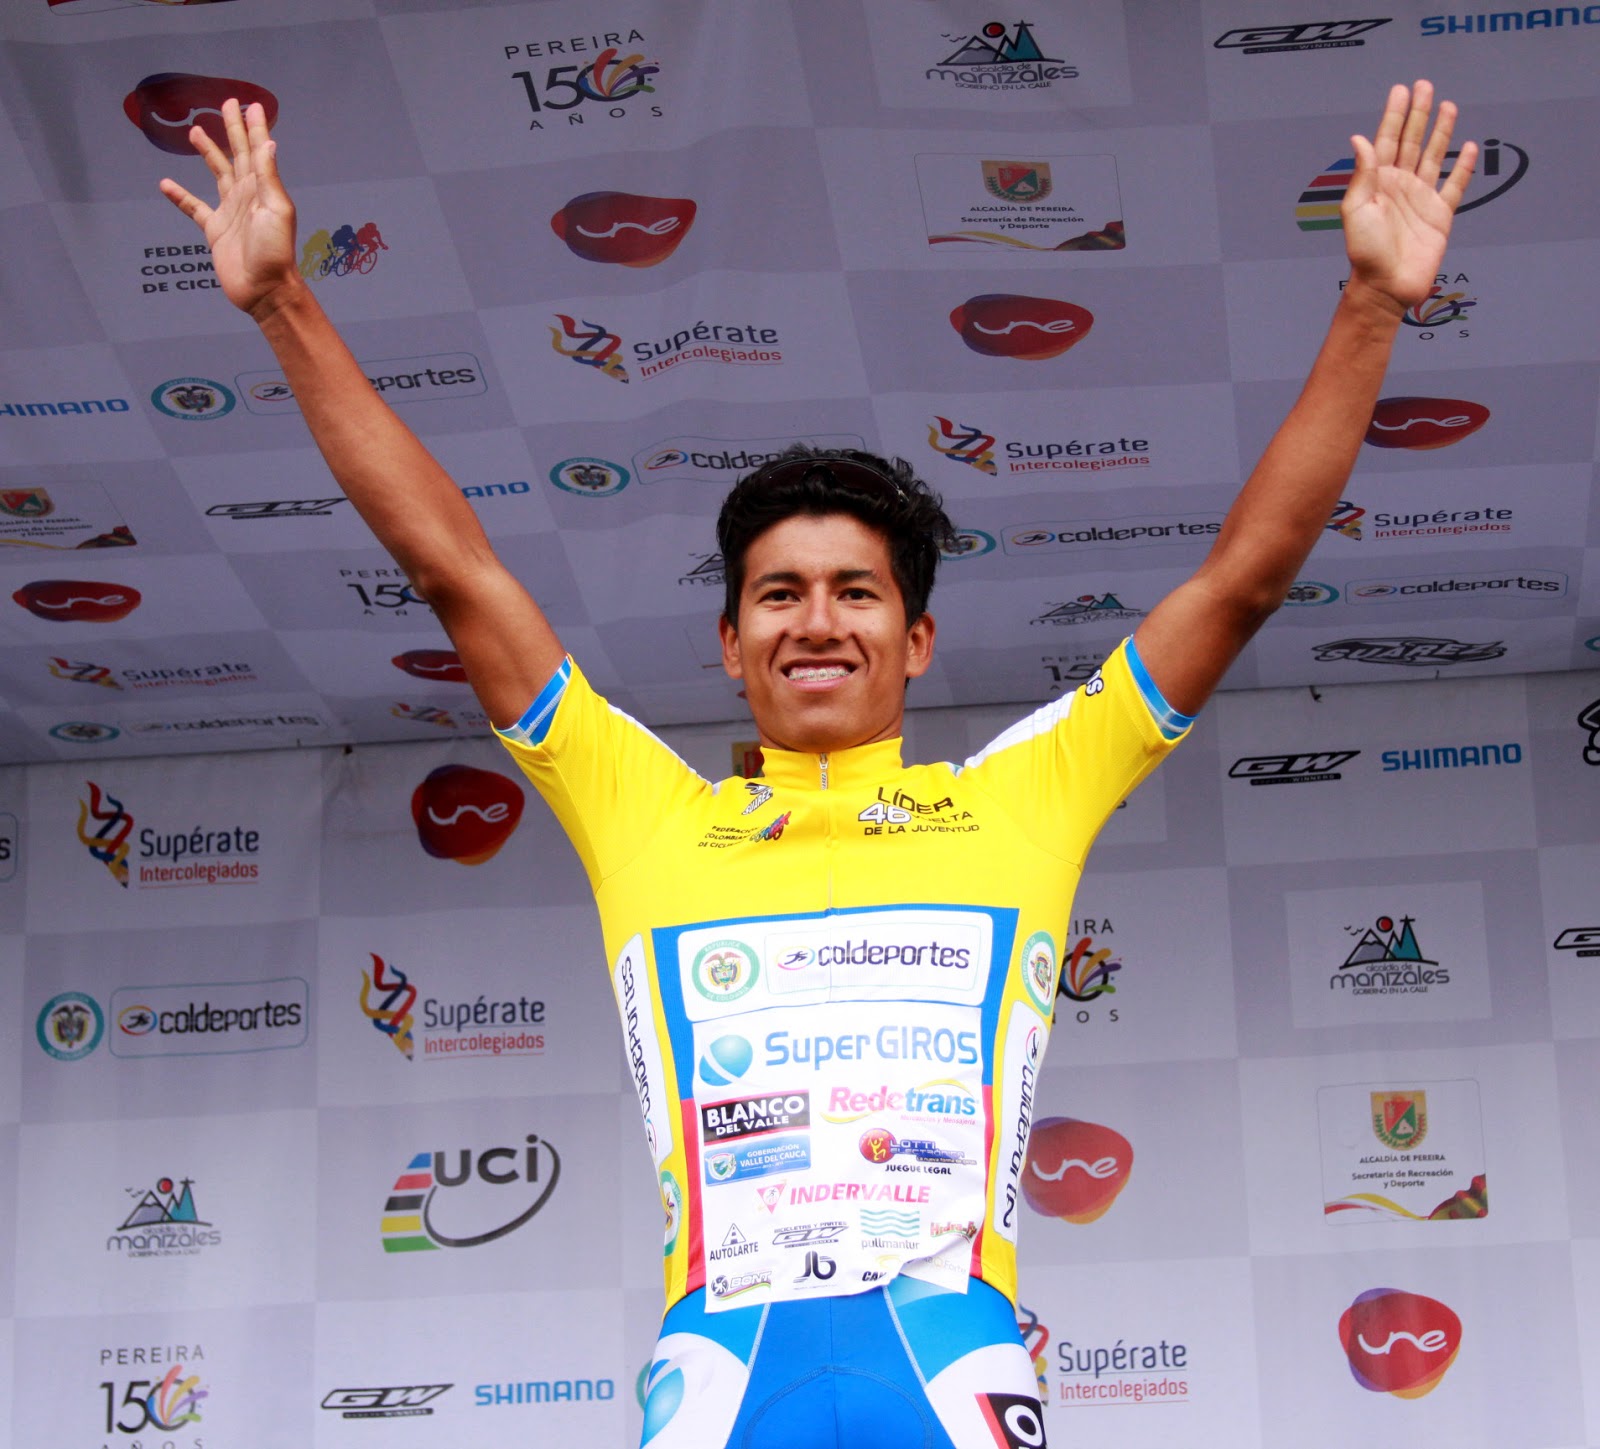 Campeonado mundial de ciclismo de ruta 2013 - Página 2 RiosLÃ-derPro